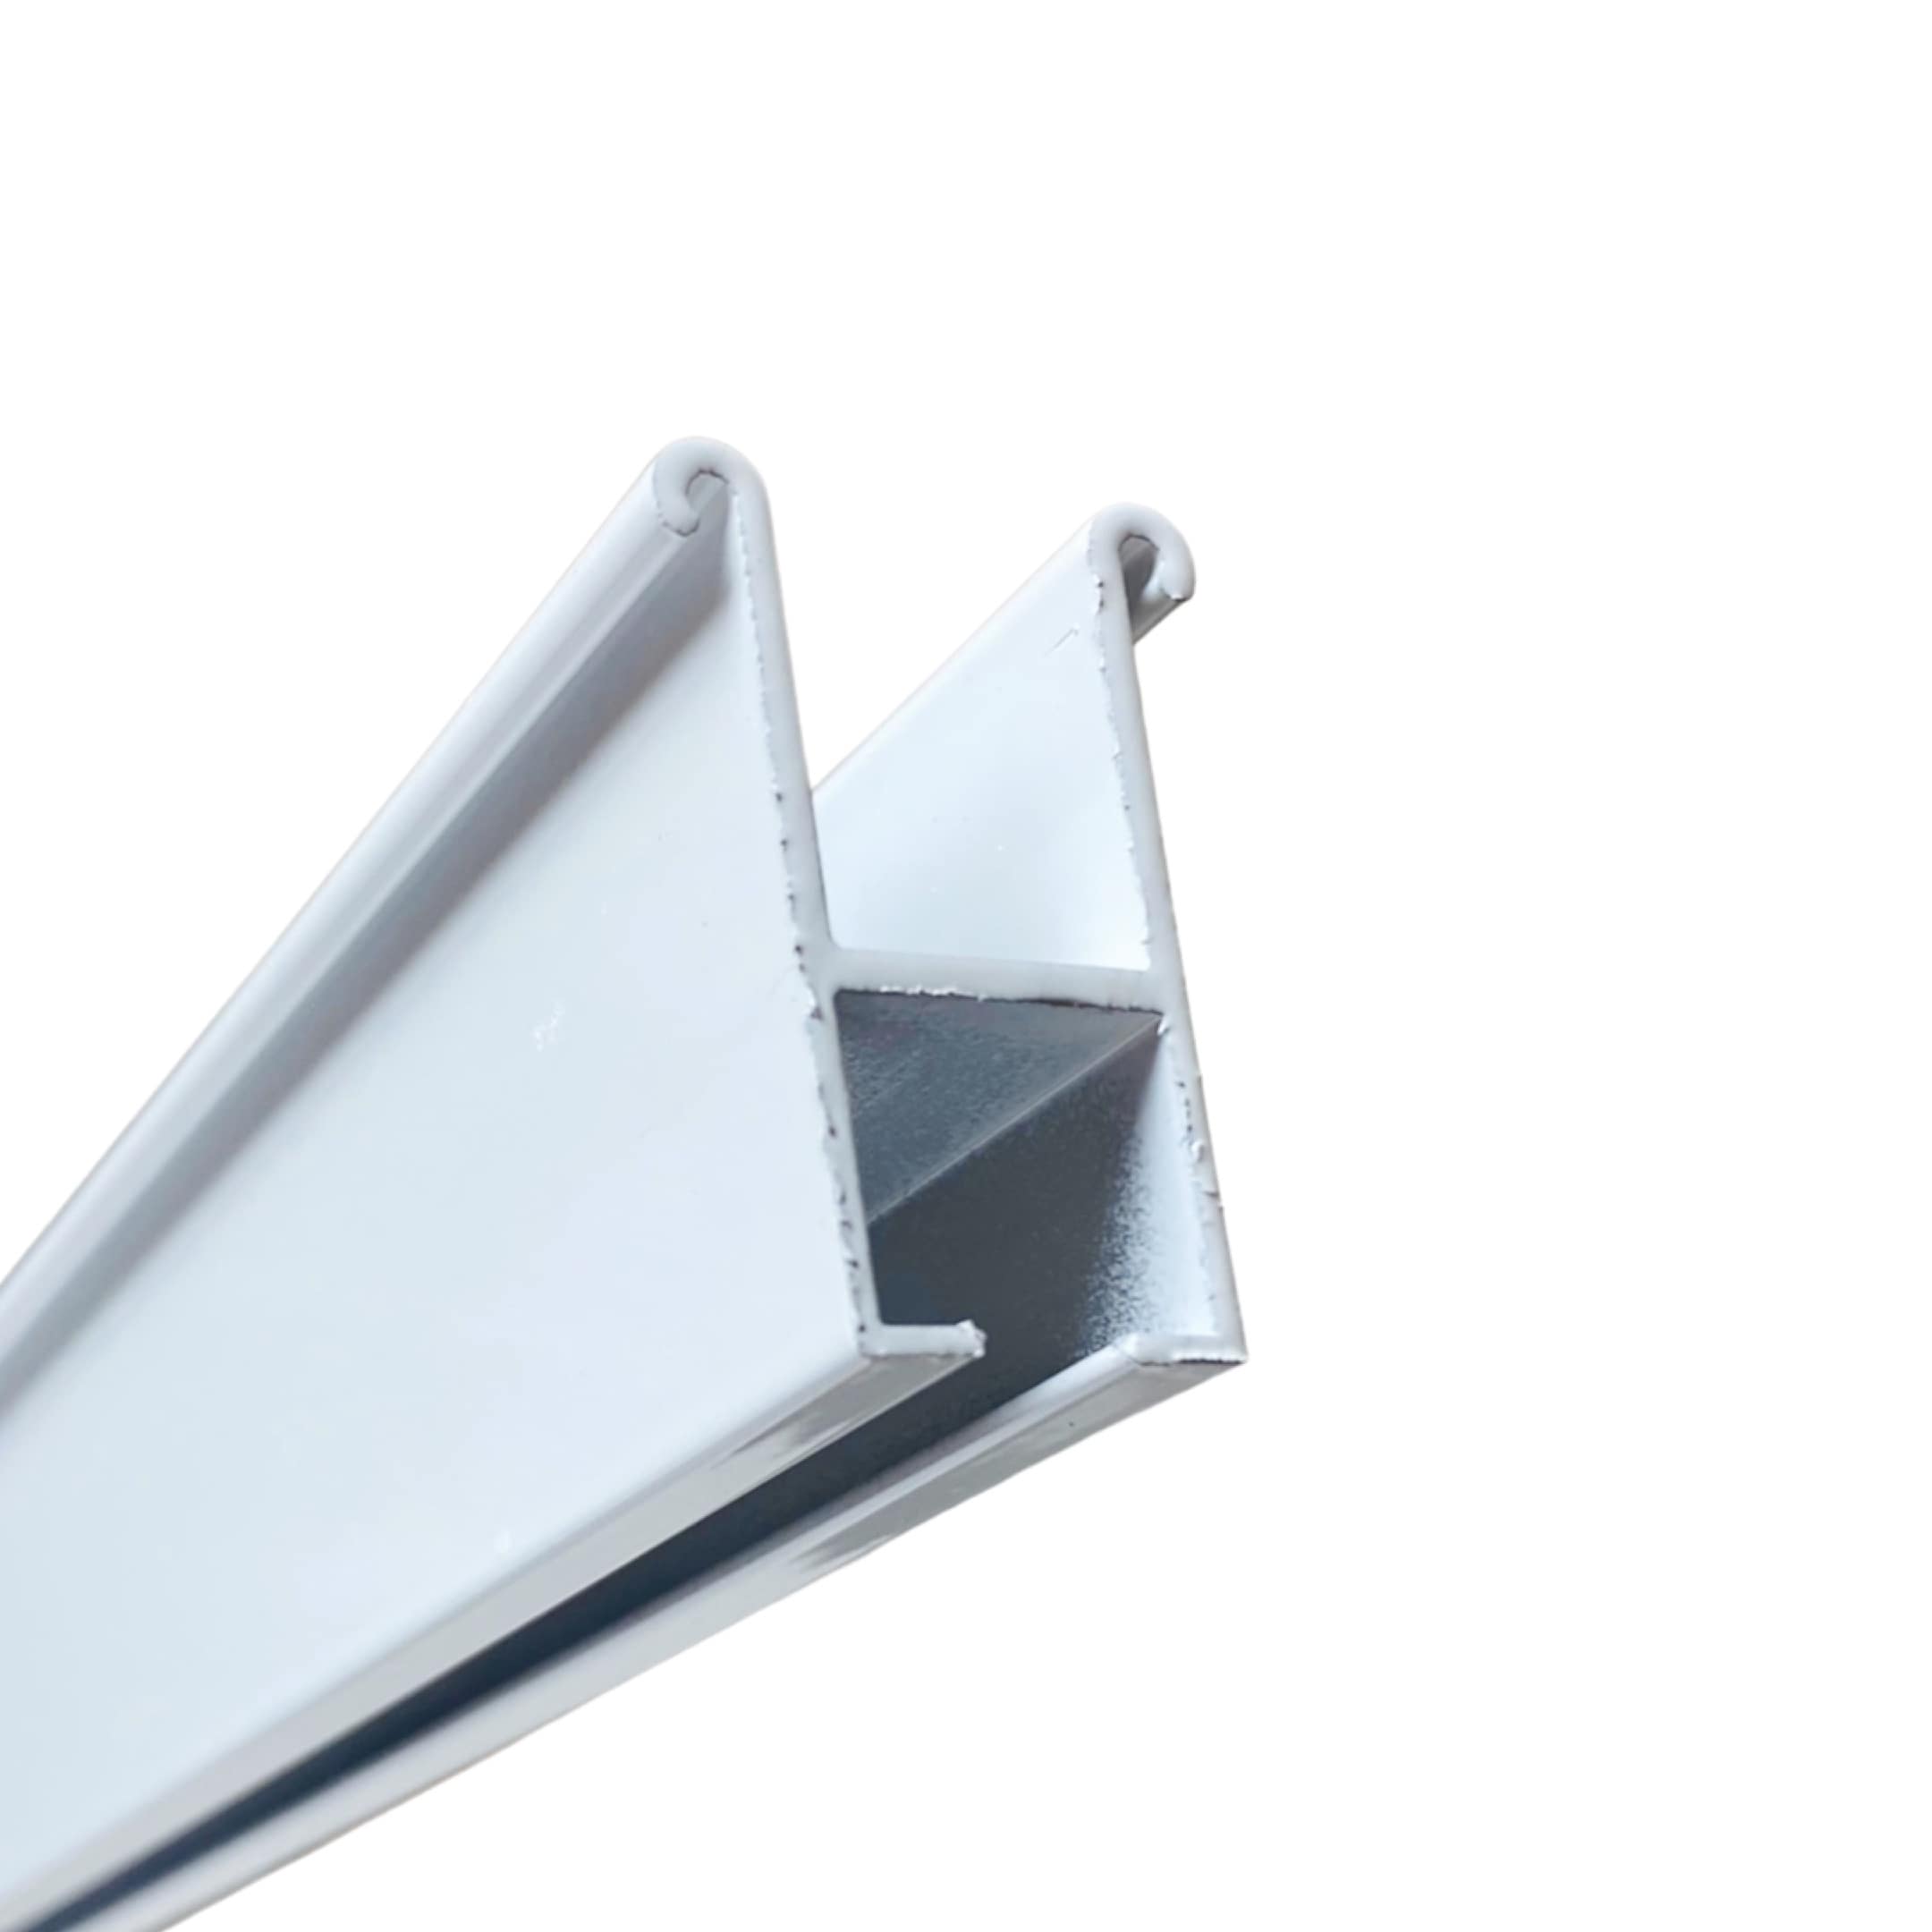 Алюминиевый профиль карниз для натяжных потолков